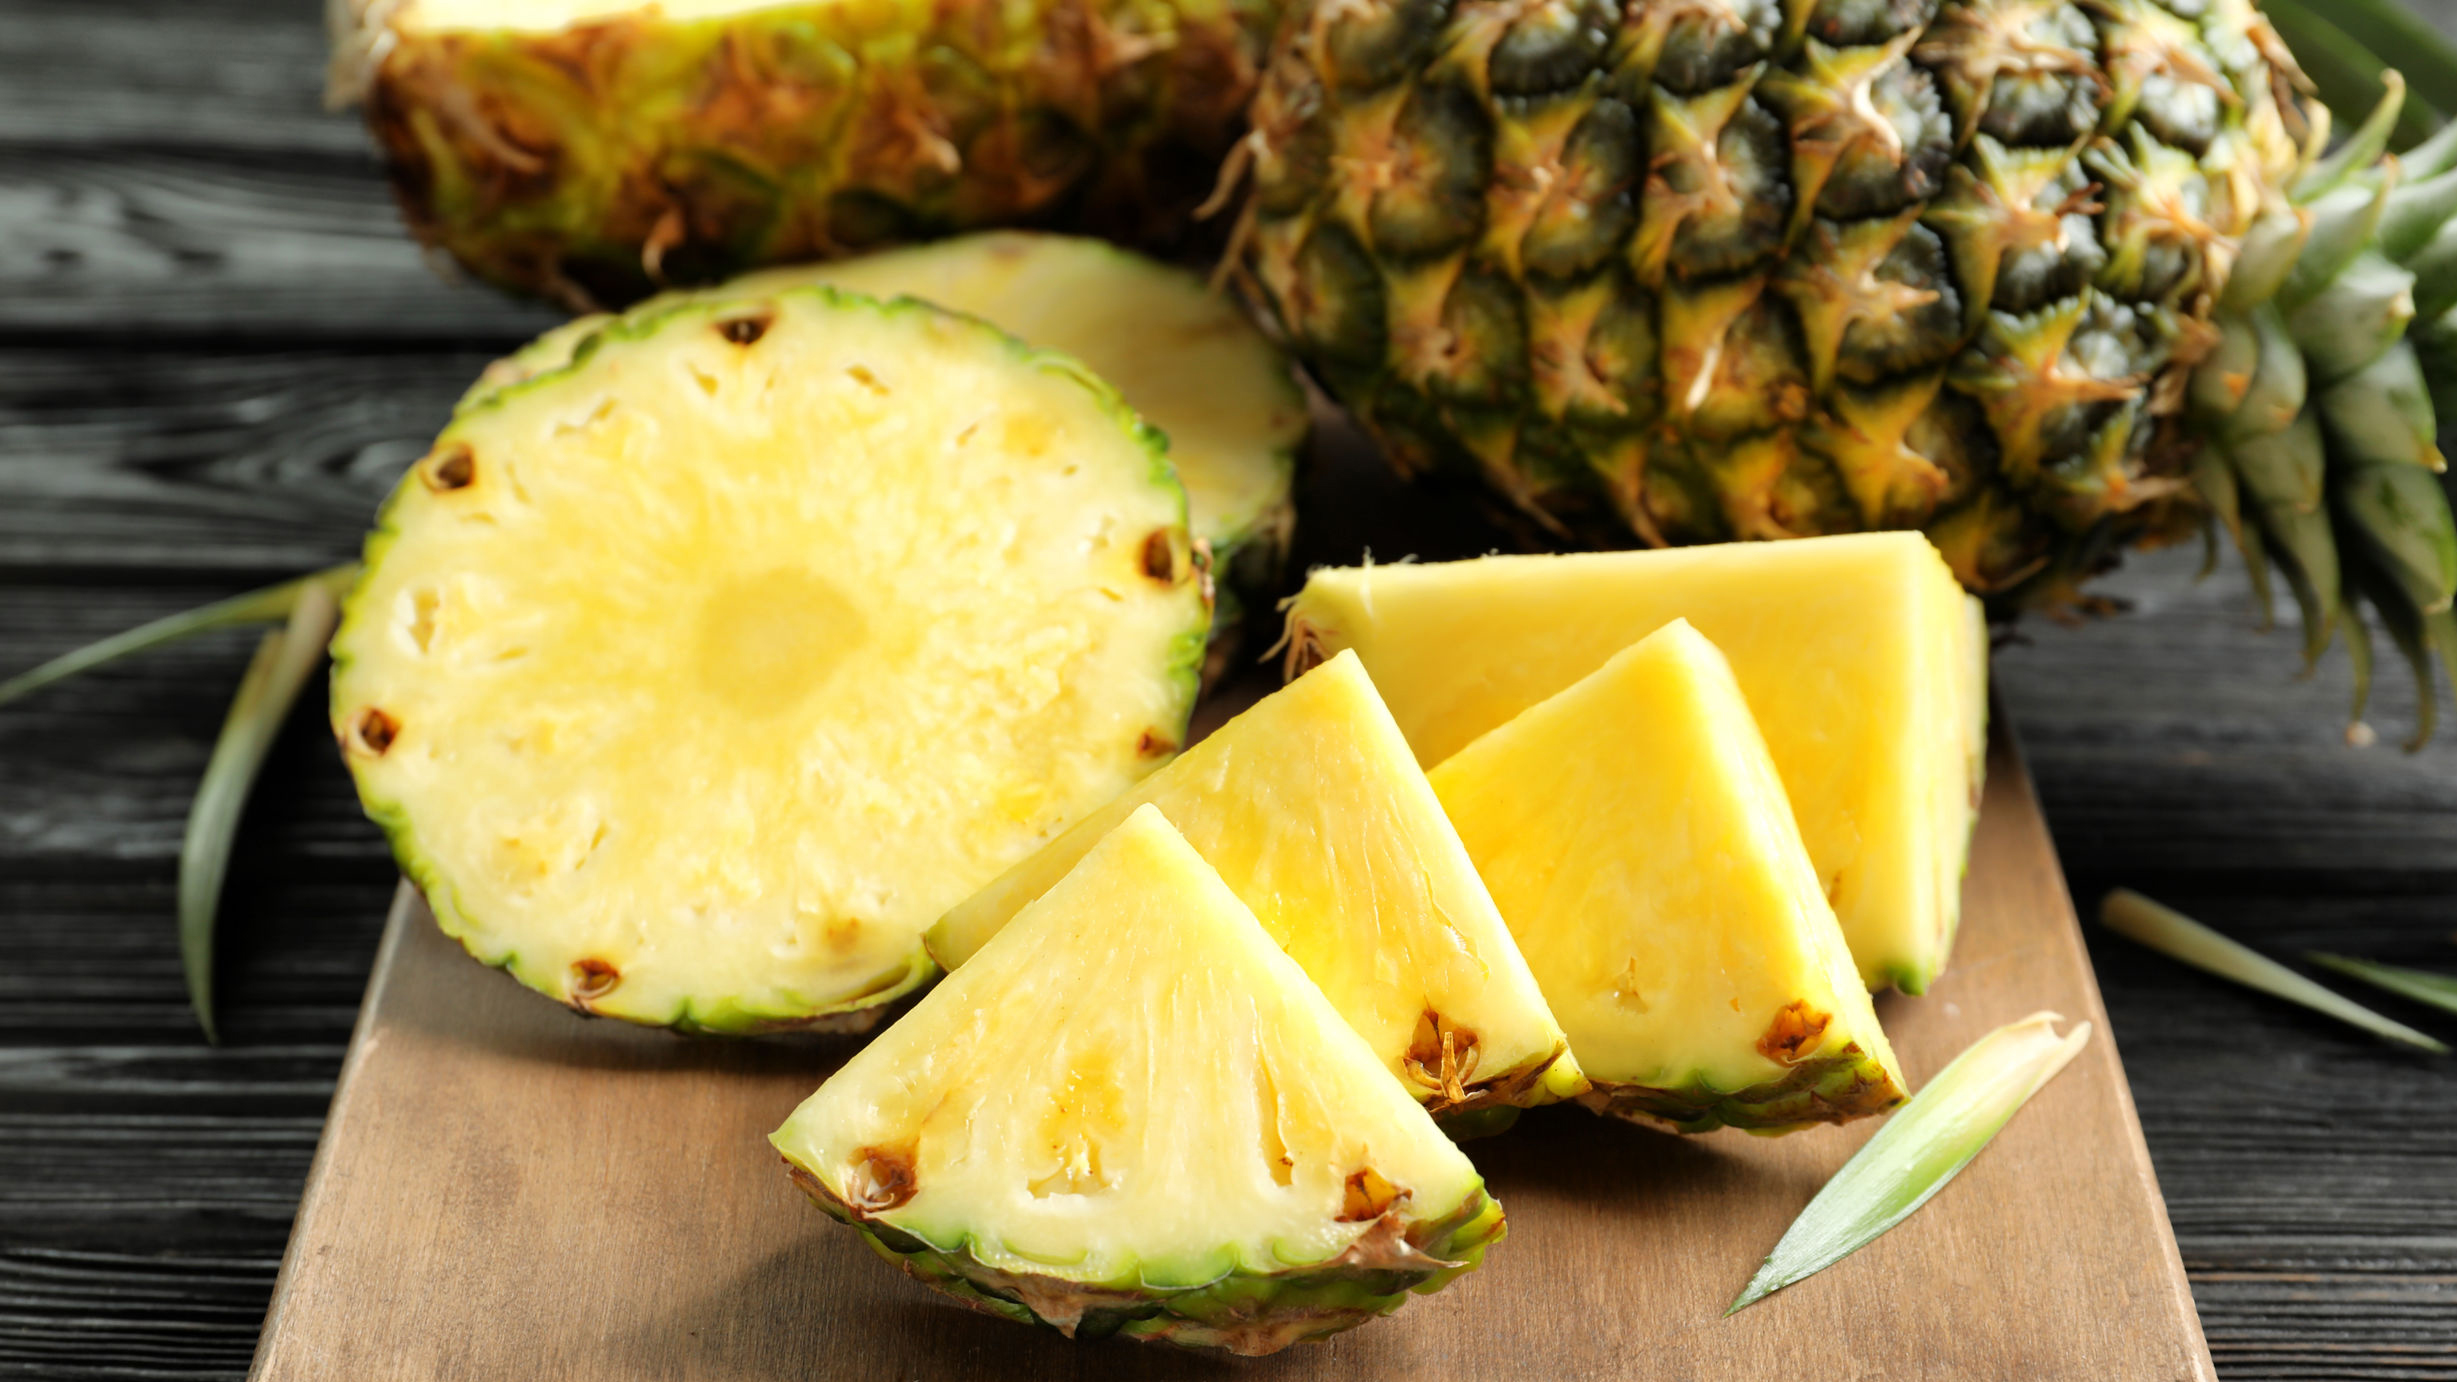 Onko ananas hyvä nesteenpoistaja? Näin vastaa ravitsemusterapeutti! |  Yhteishyvä